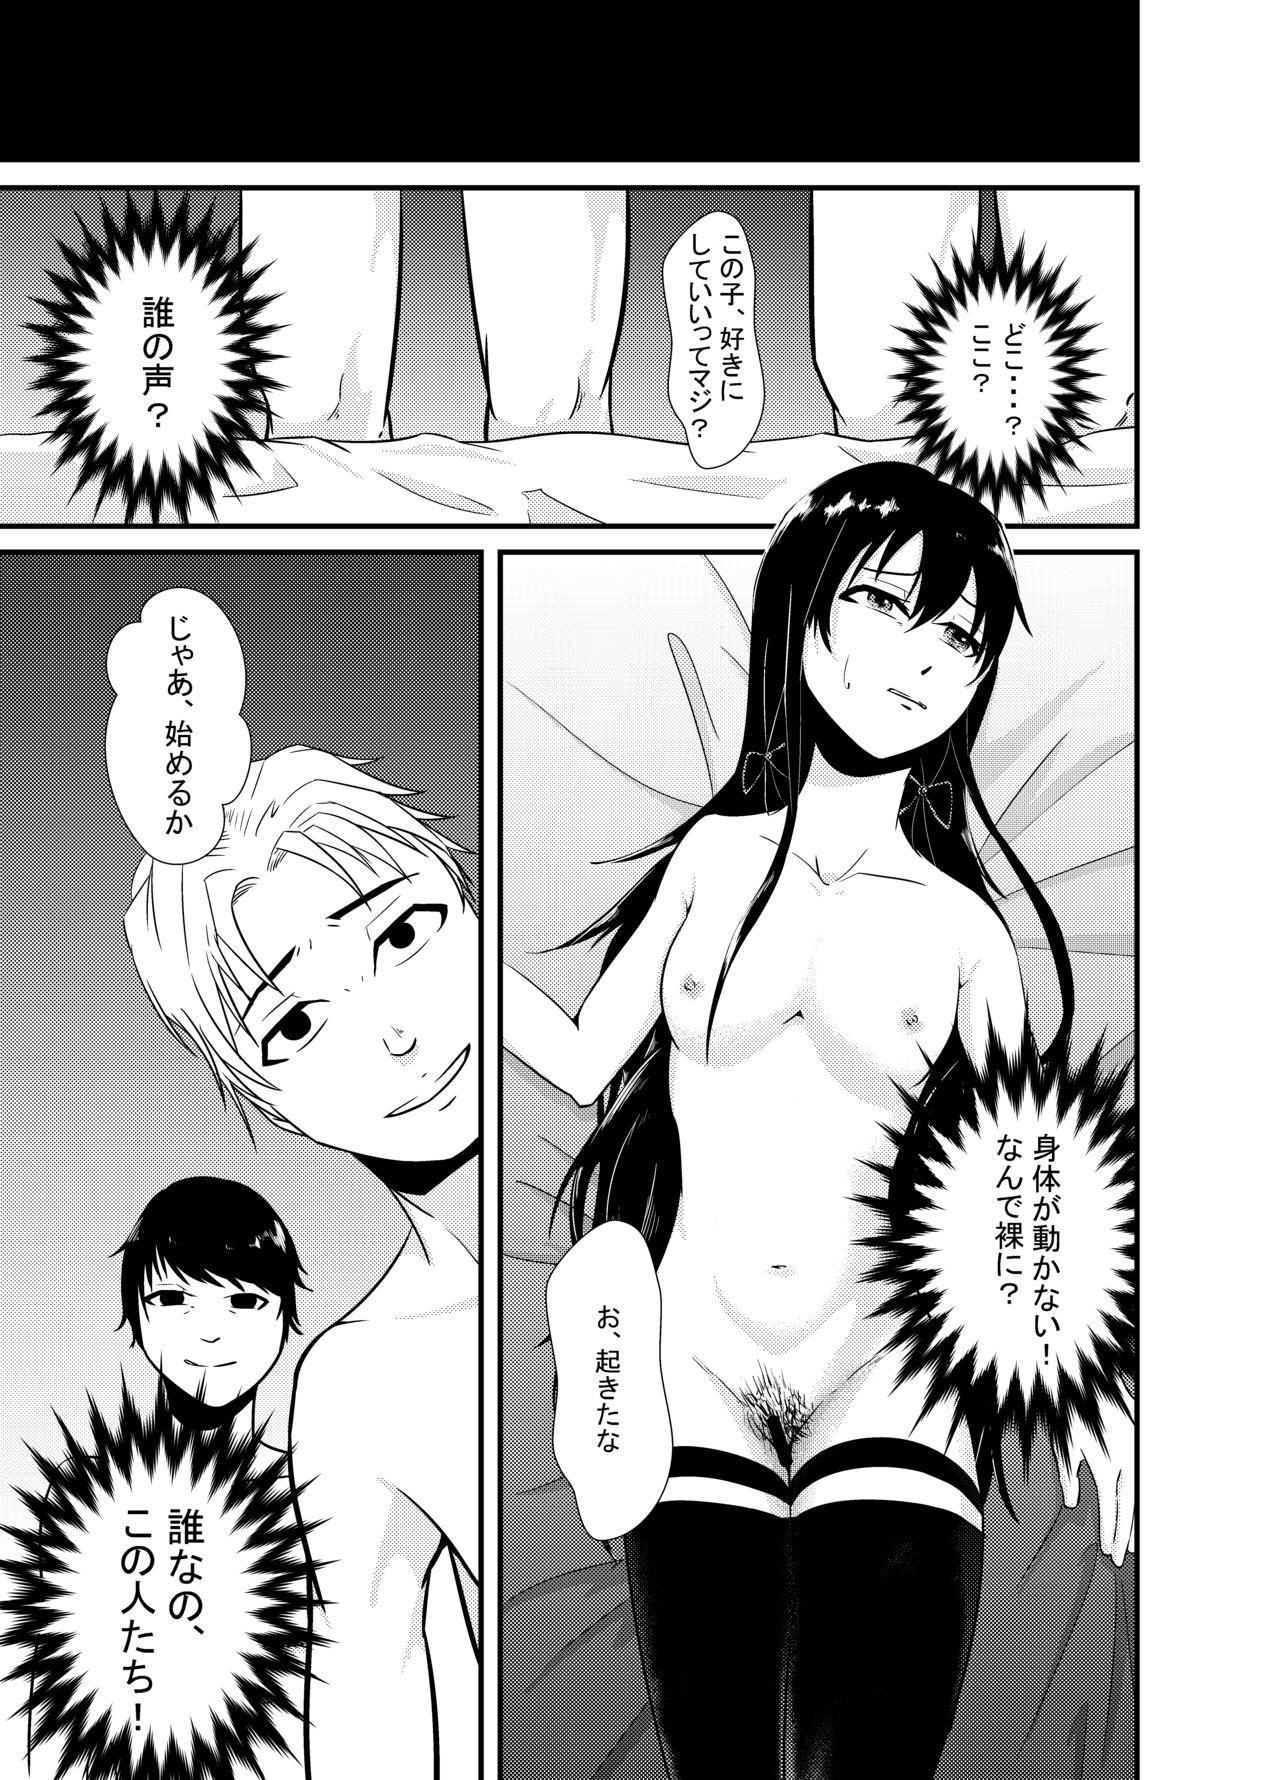 Hardcore Sex Yukinoshita Yukino no "Honmono" - Yahari ore no seishun love come wa machigatteiru Ghetto - Page 6